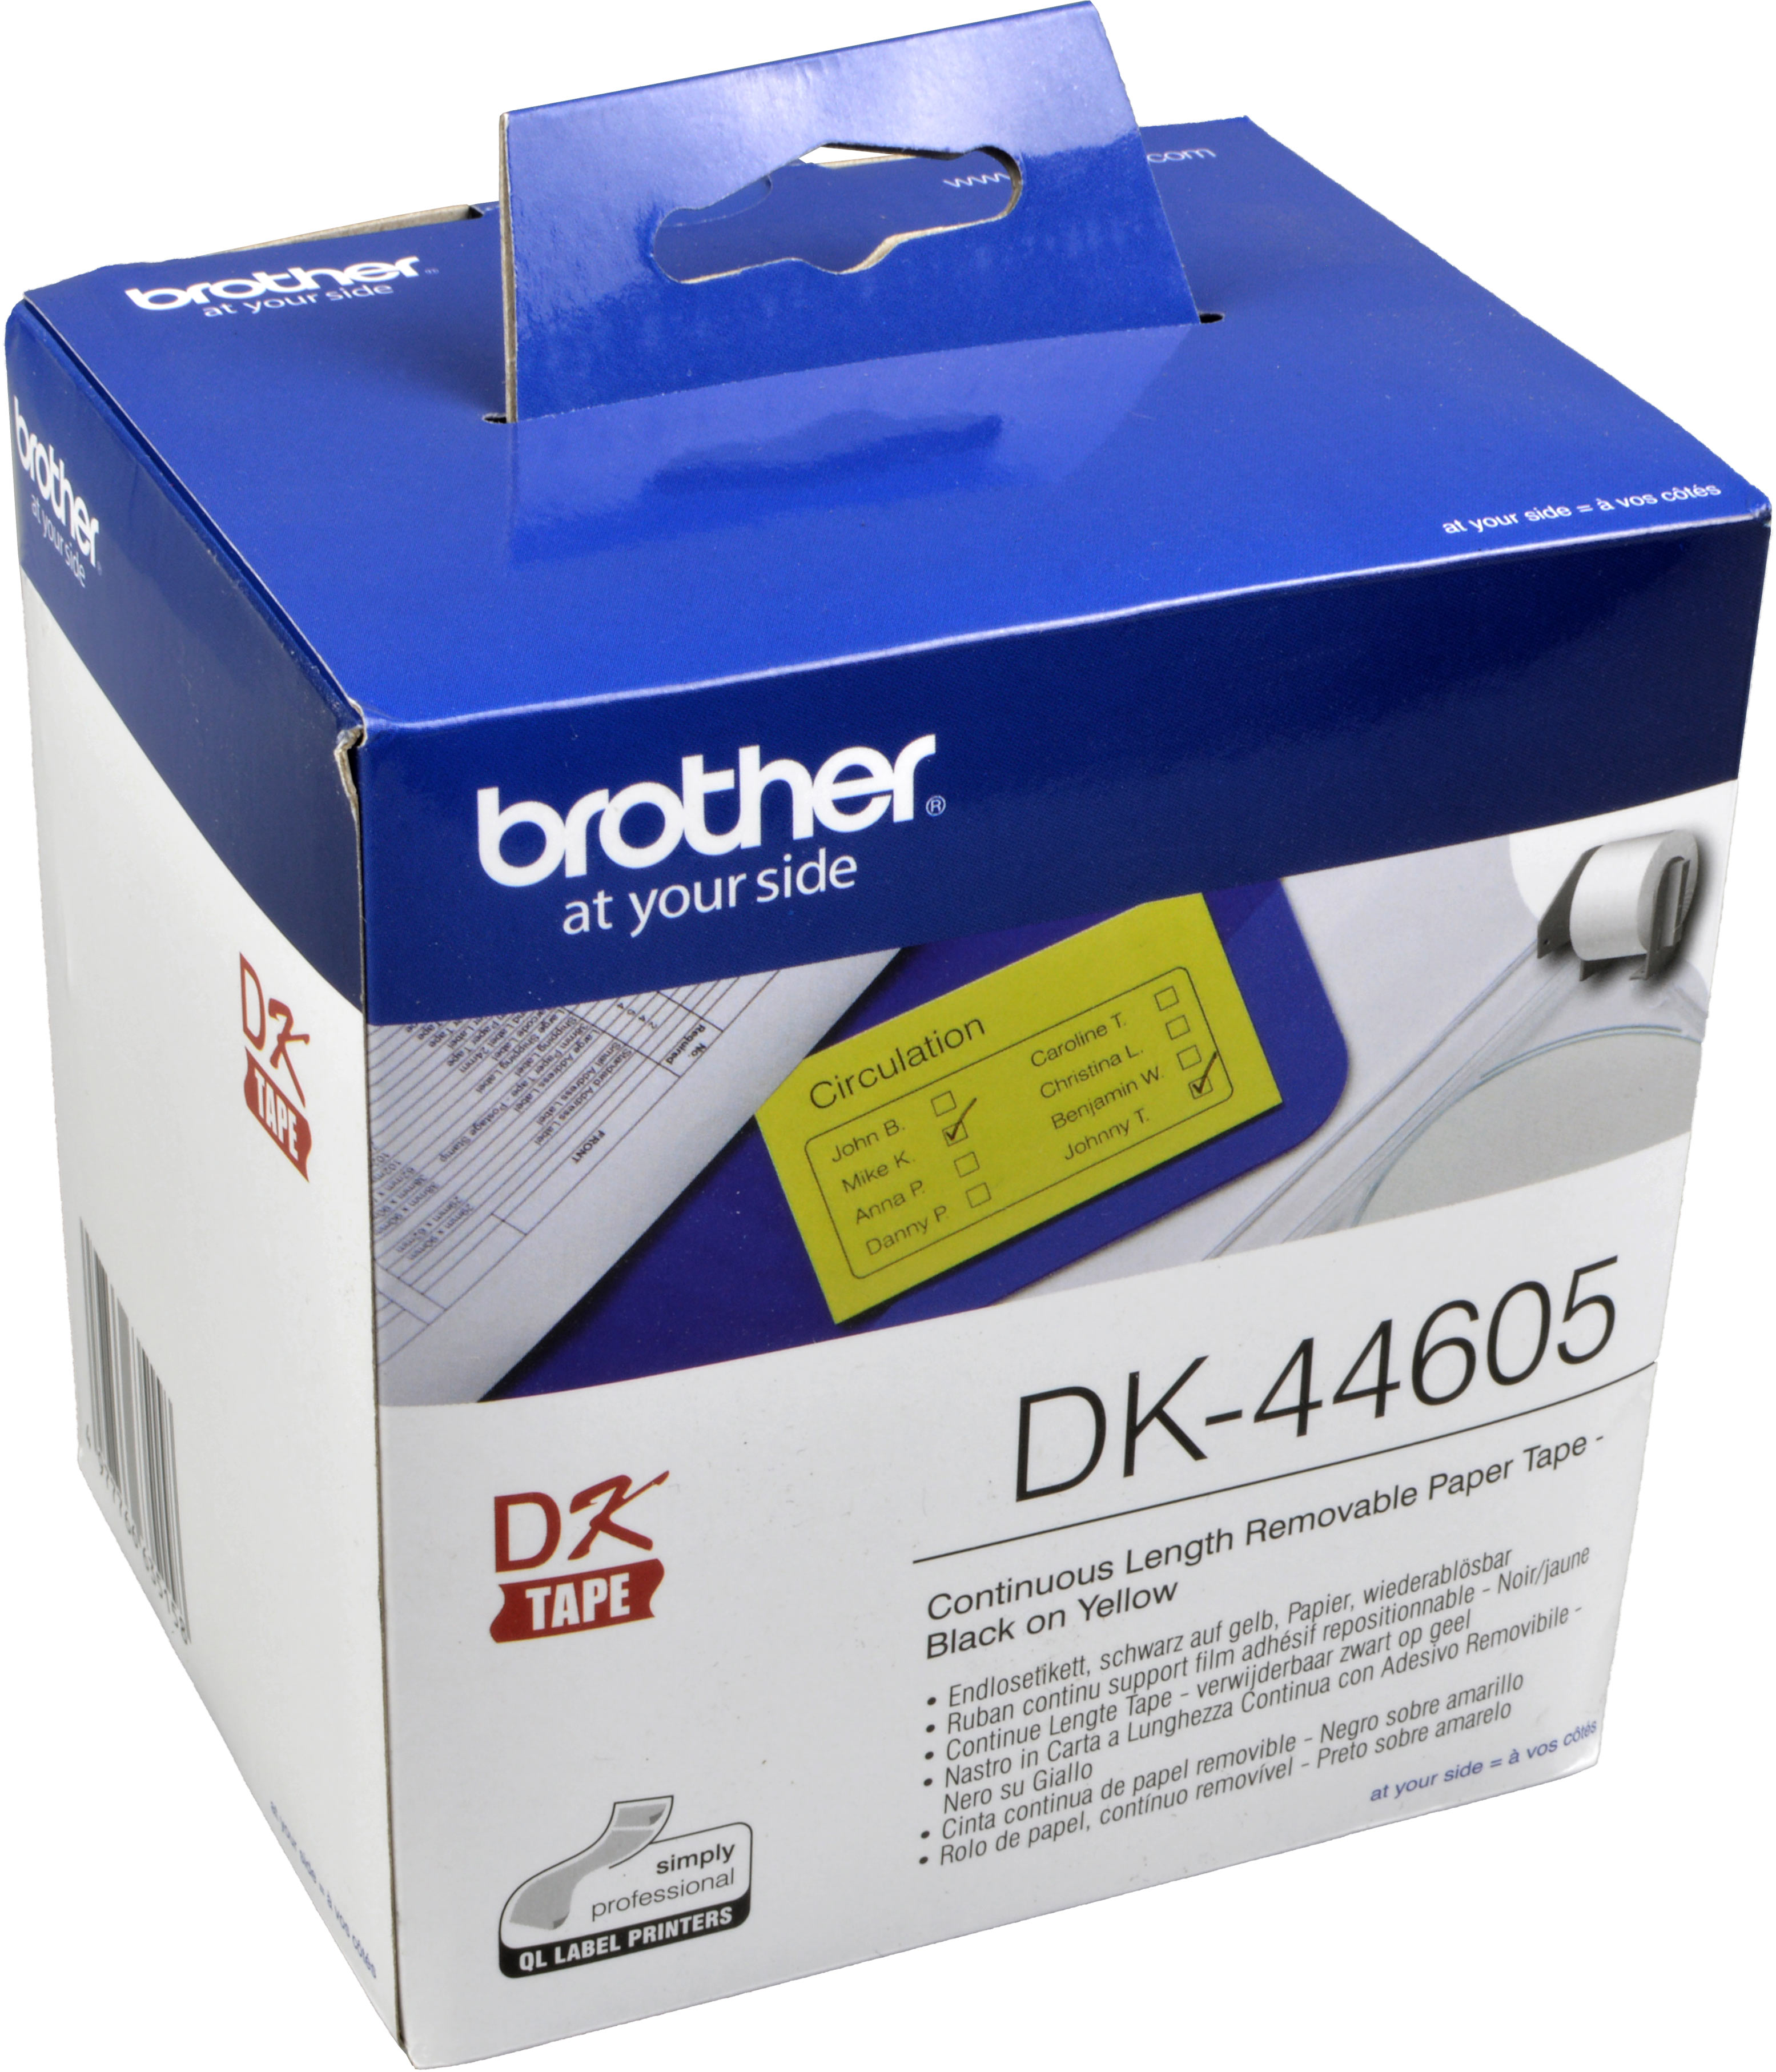 Brother PT Etiketten DK44605  gelb  62mm x 30,48m  Rolle  ablösbar